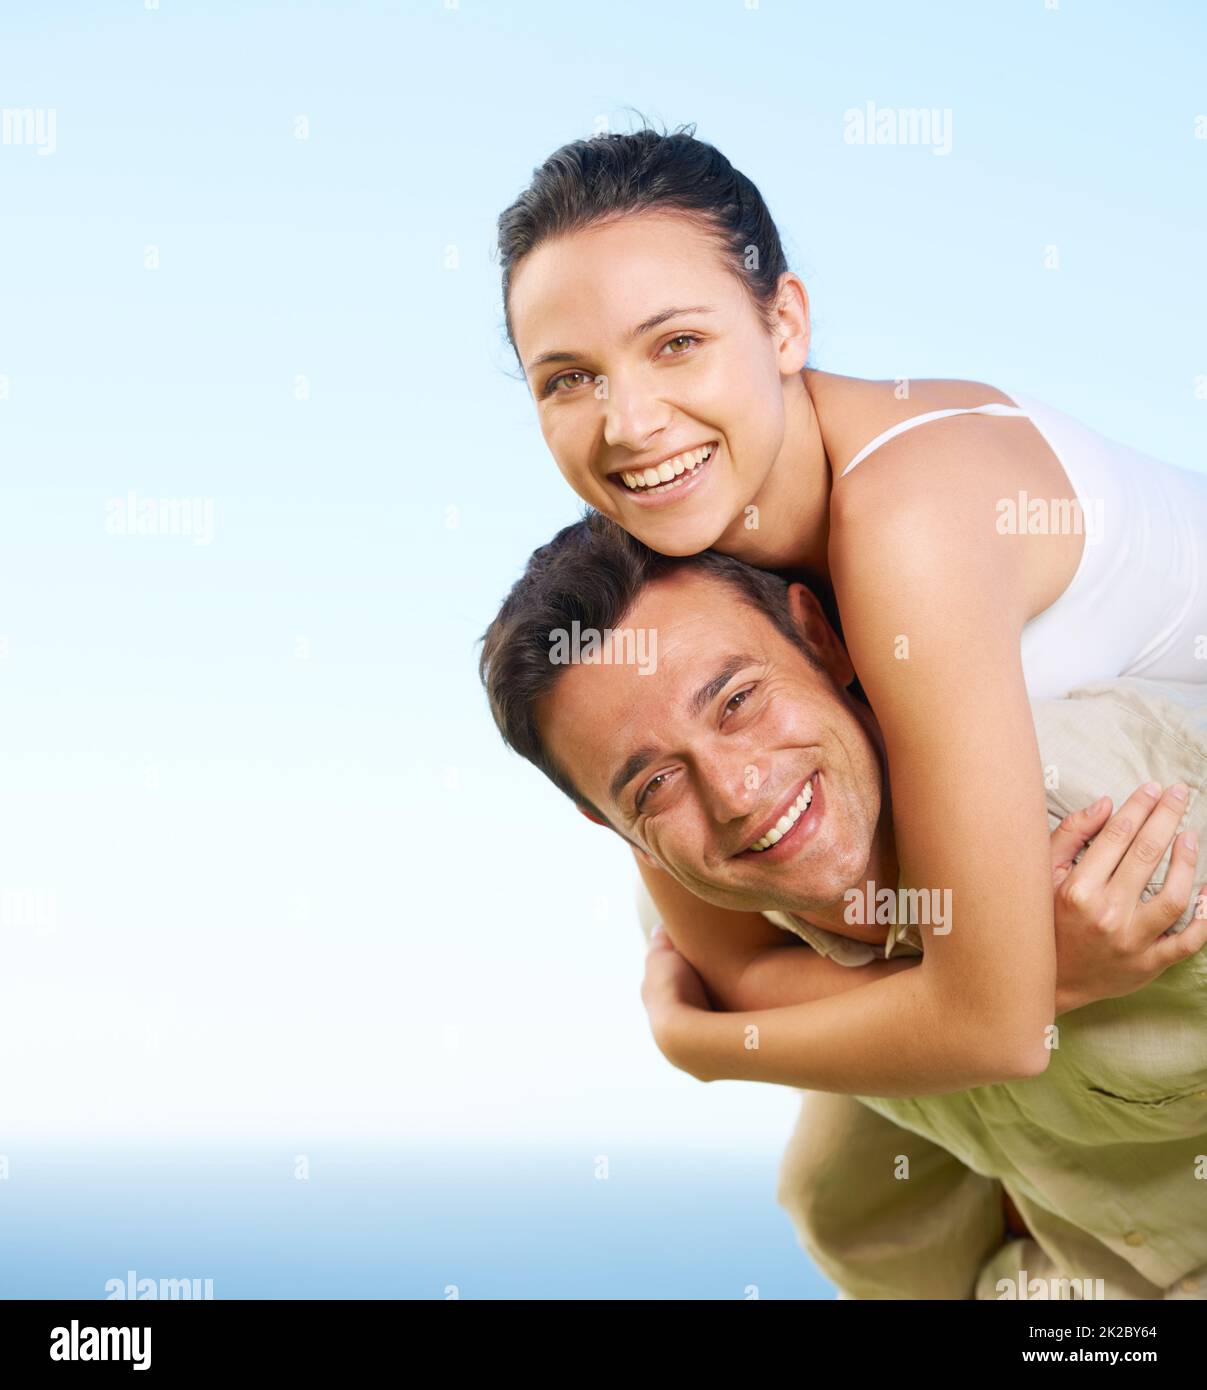 Wir haben ihren Urlaub genossen. Ein junger Mann, der seiner Freundin einen Huckepack mit dem Ozean im Hintergrund gibt. Stockfoto